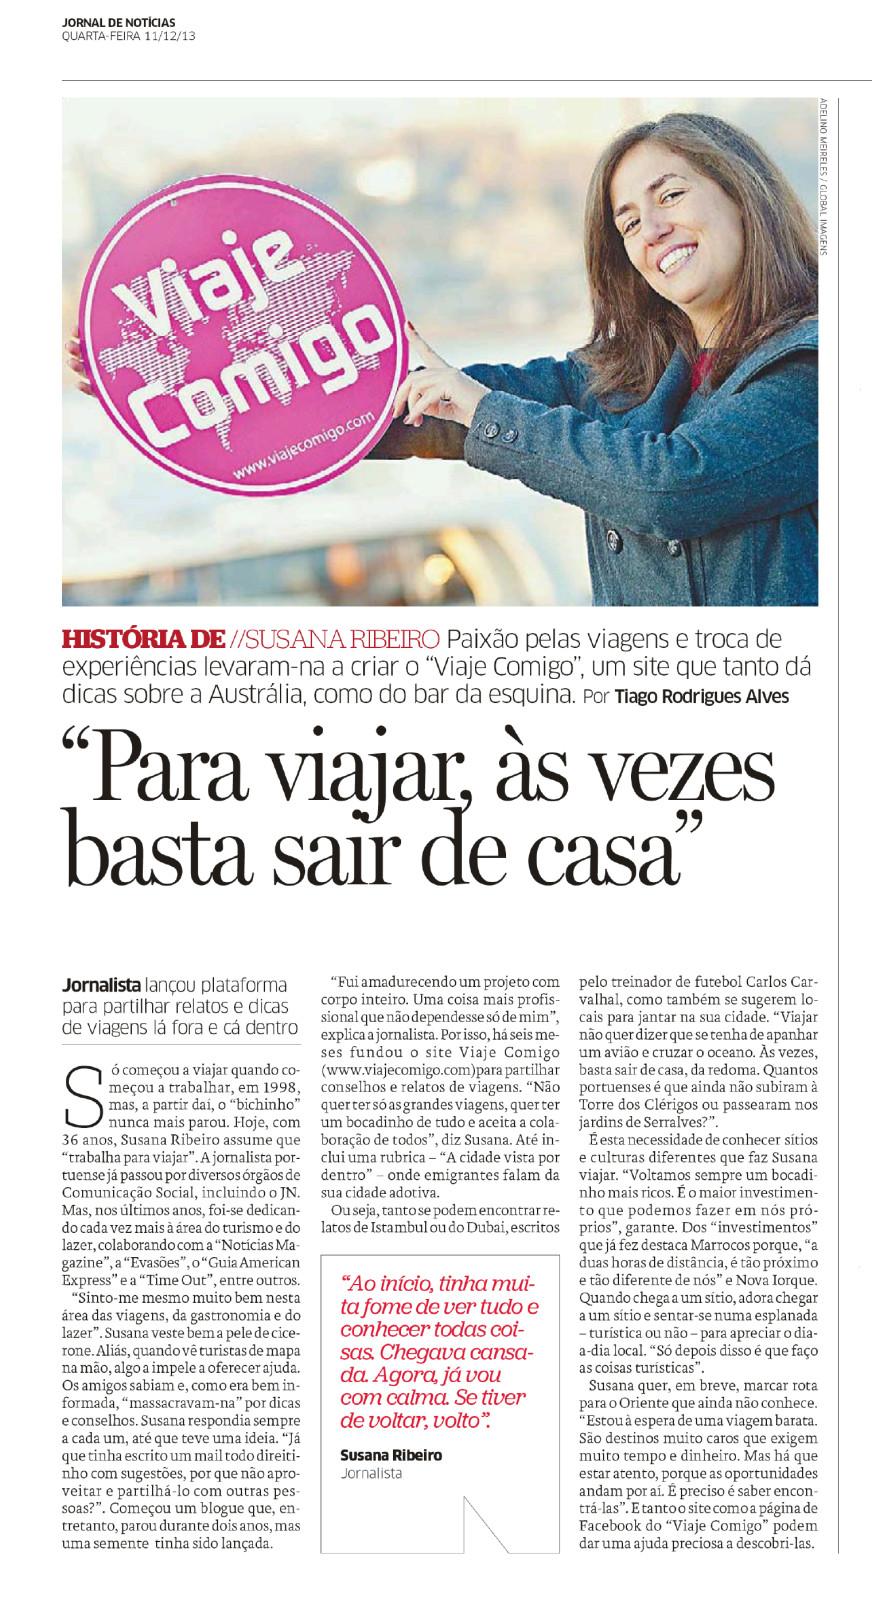 Jornal de Noticias e-paper - Jornal de Noticias - 11 dez 2013 -